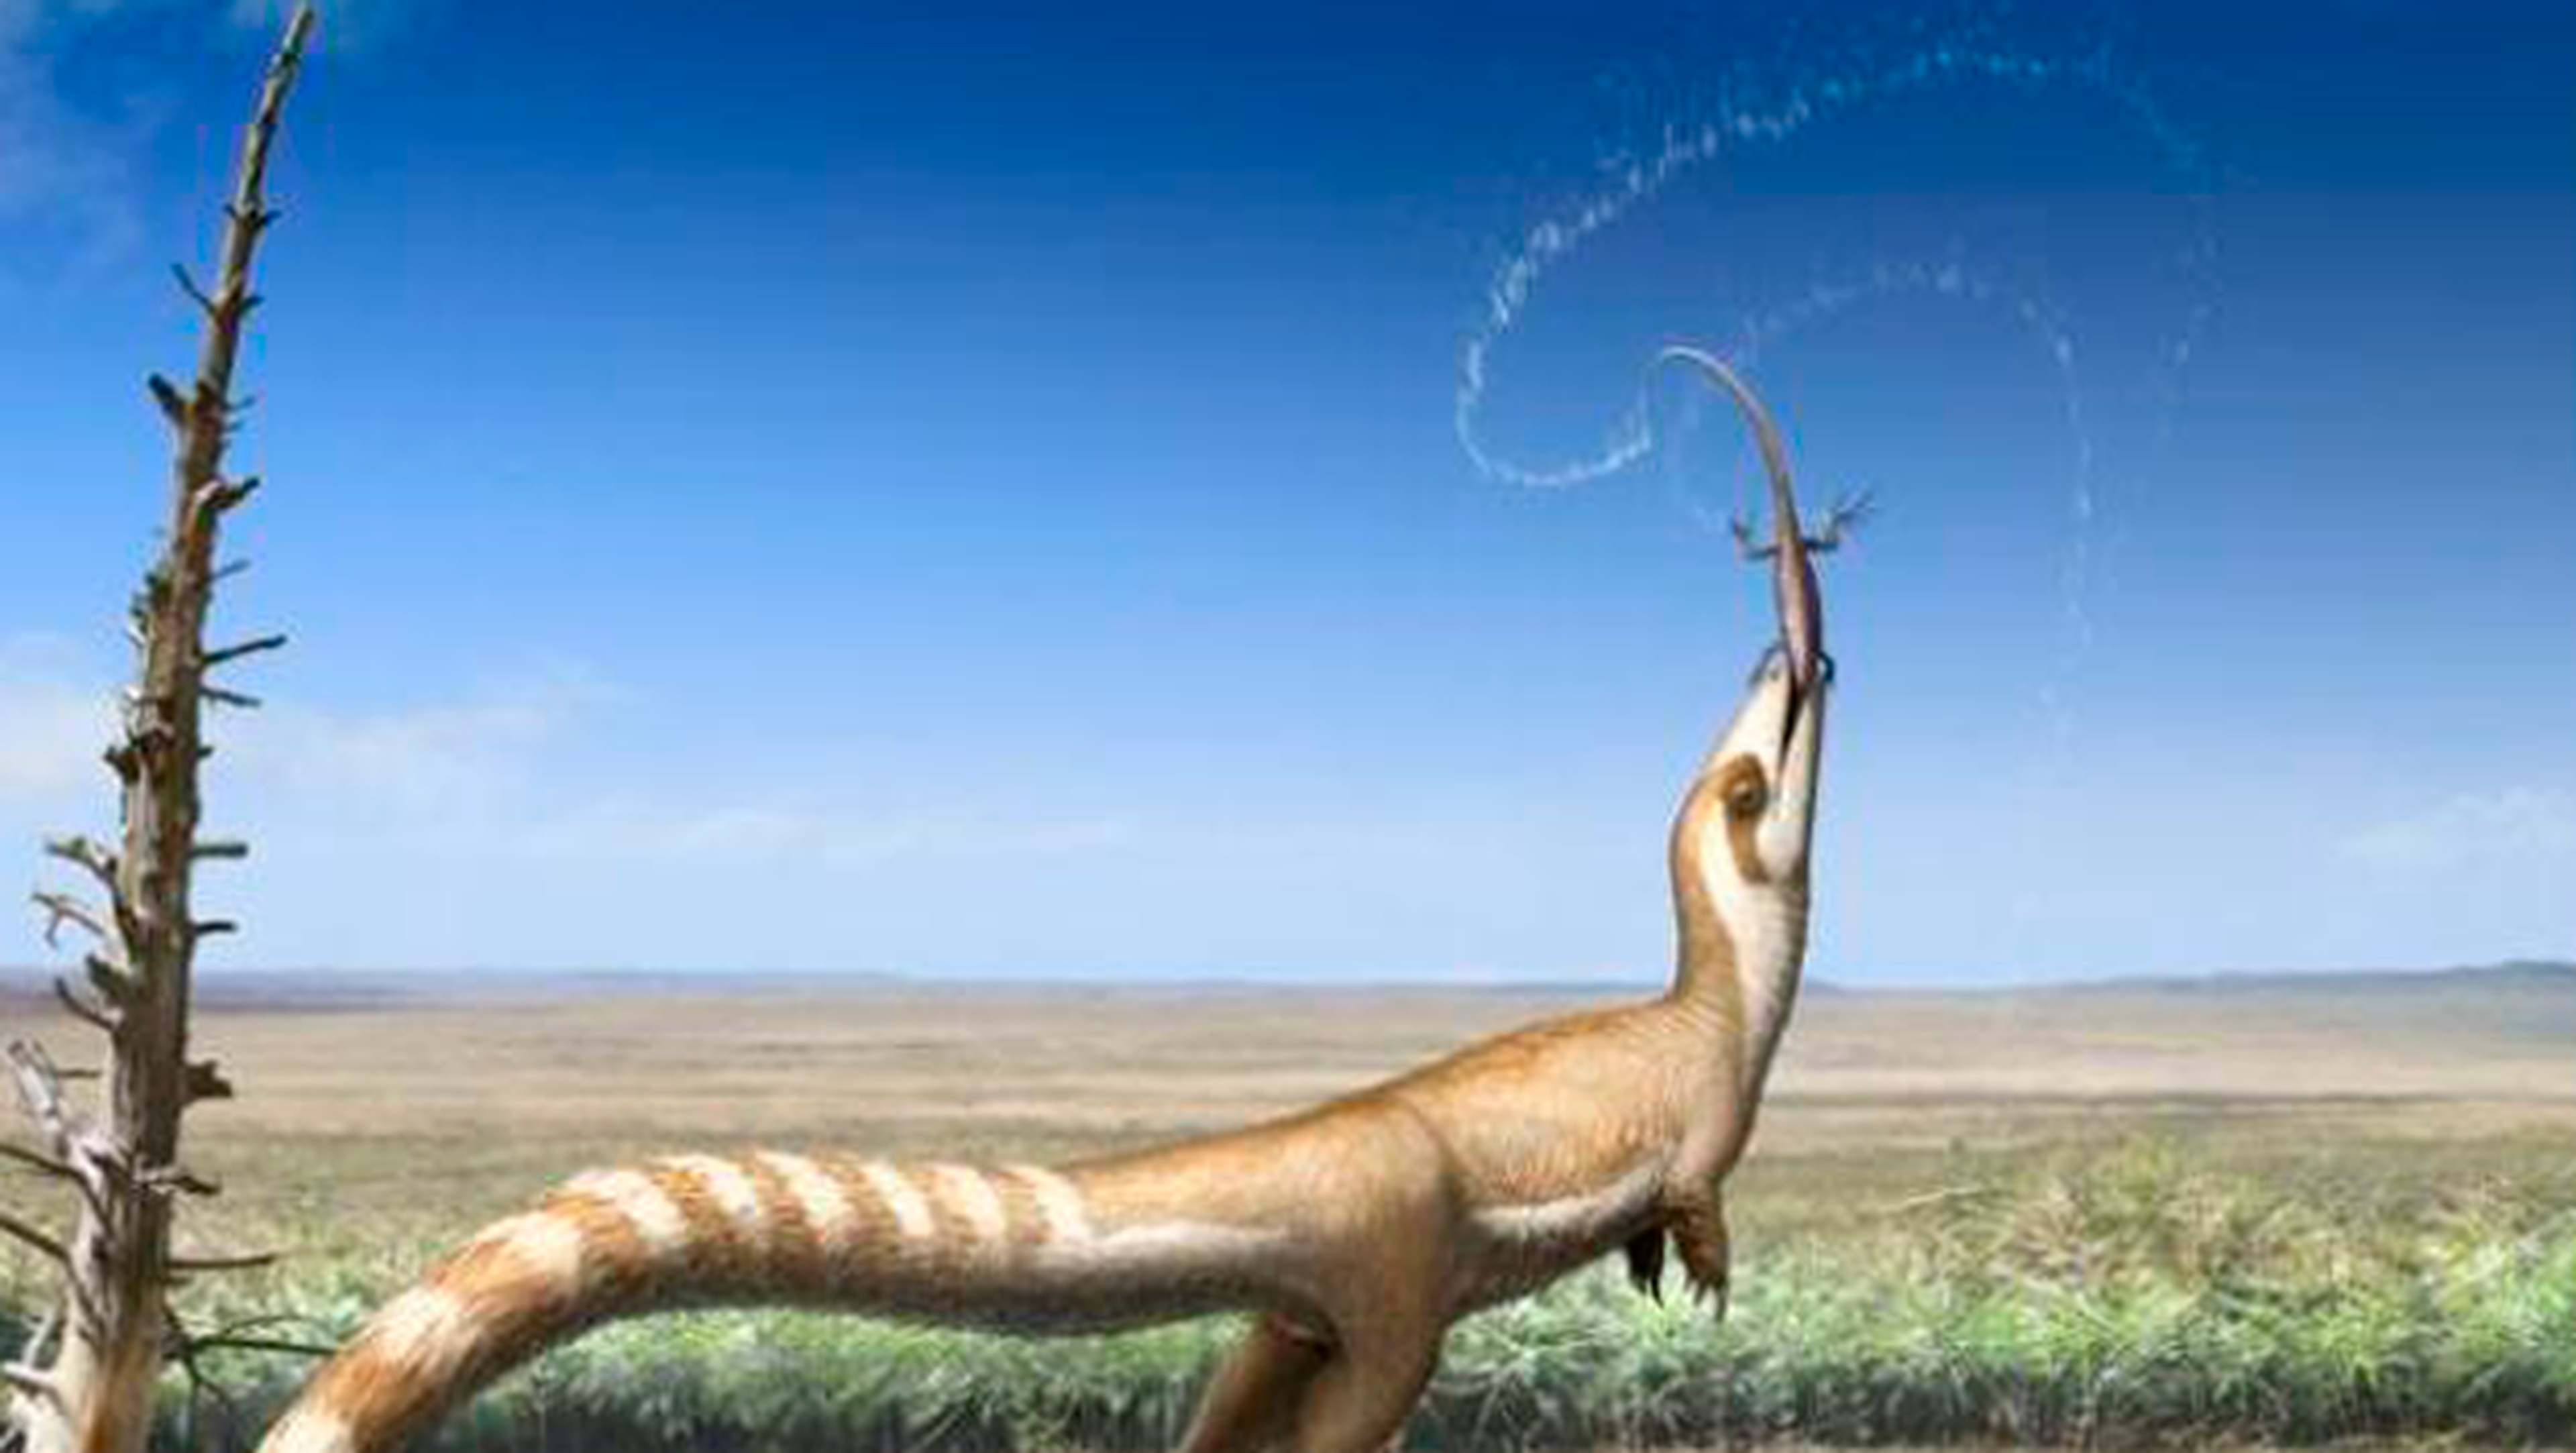 sinosauropteryx primer dinosaurio descubierto con antifaz